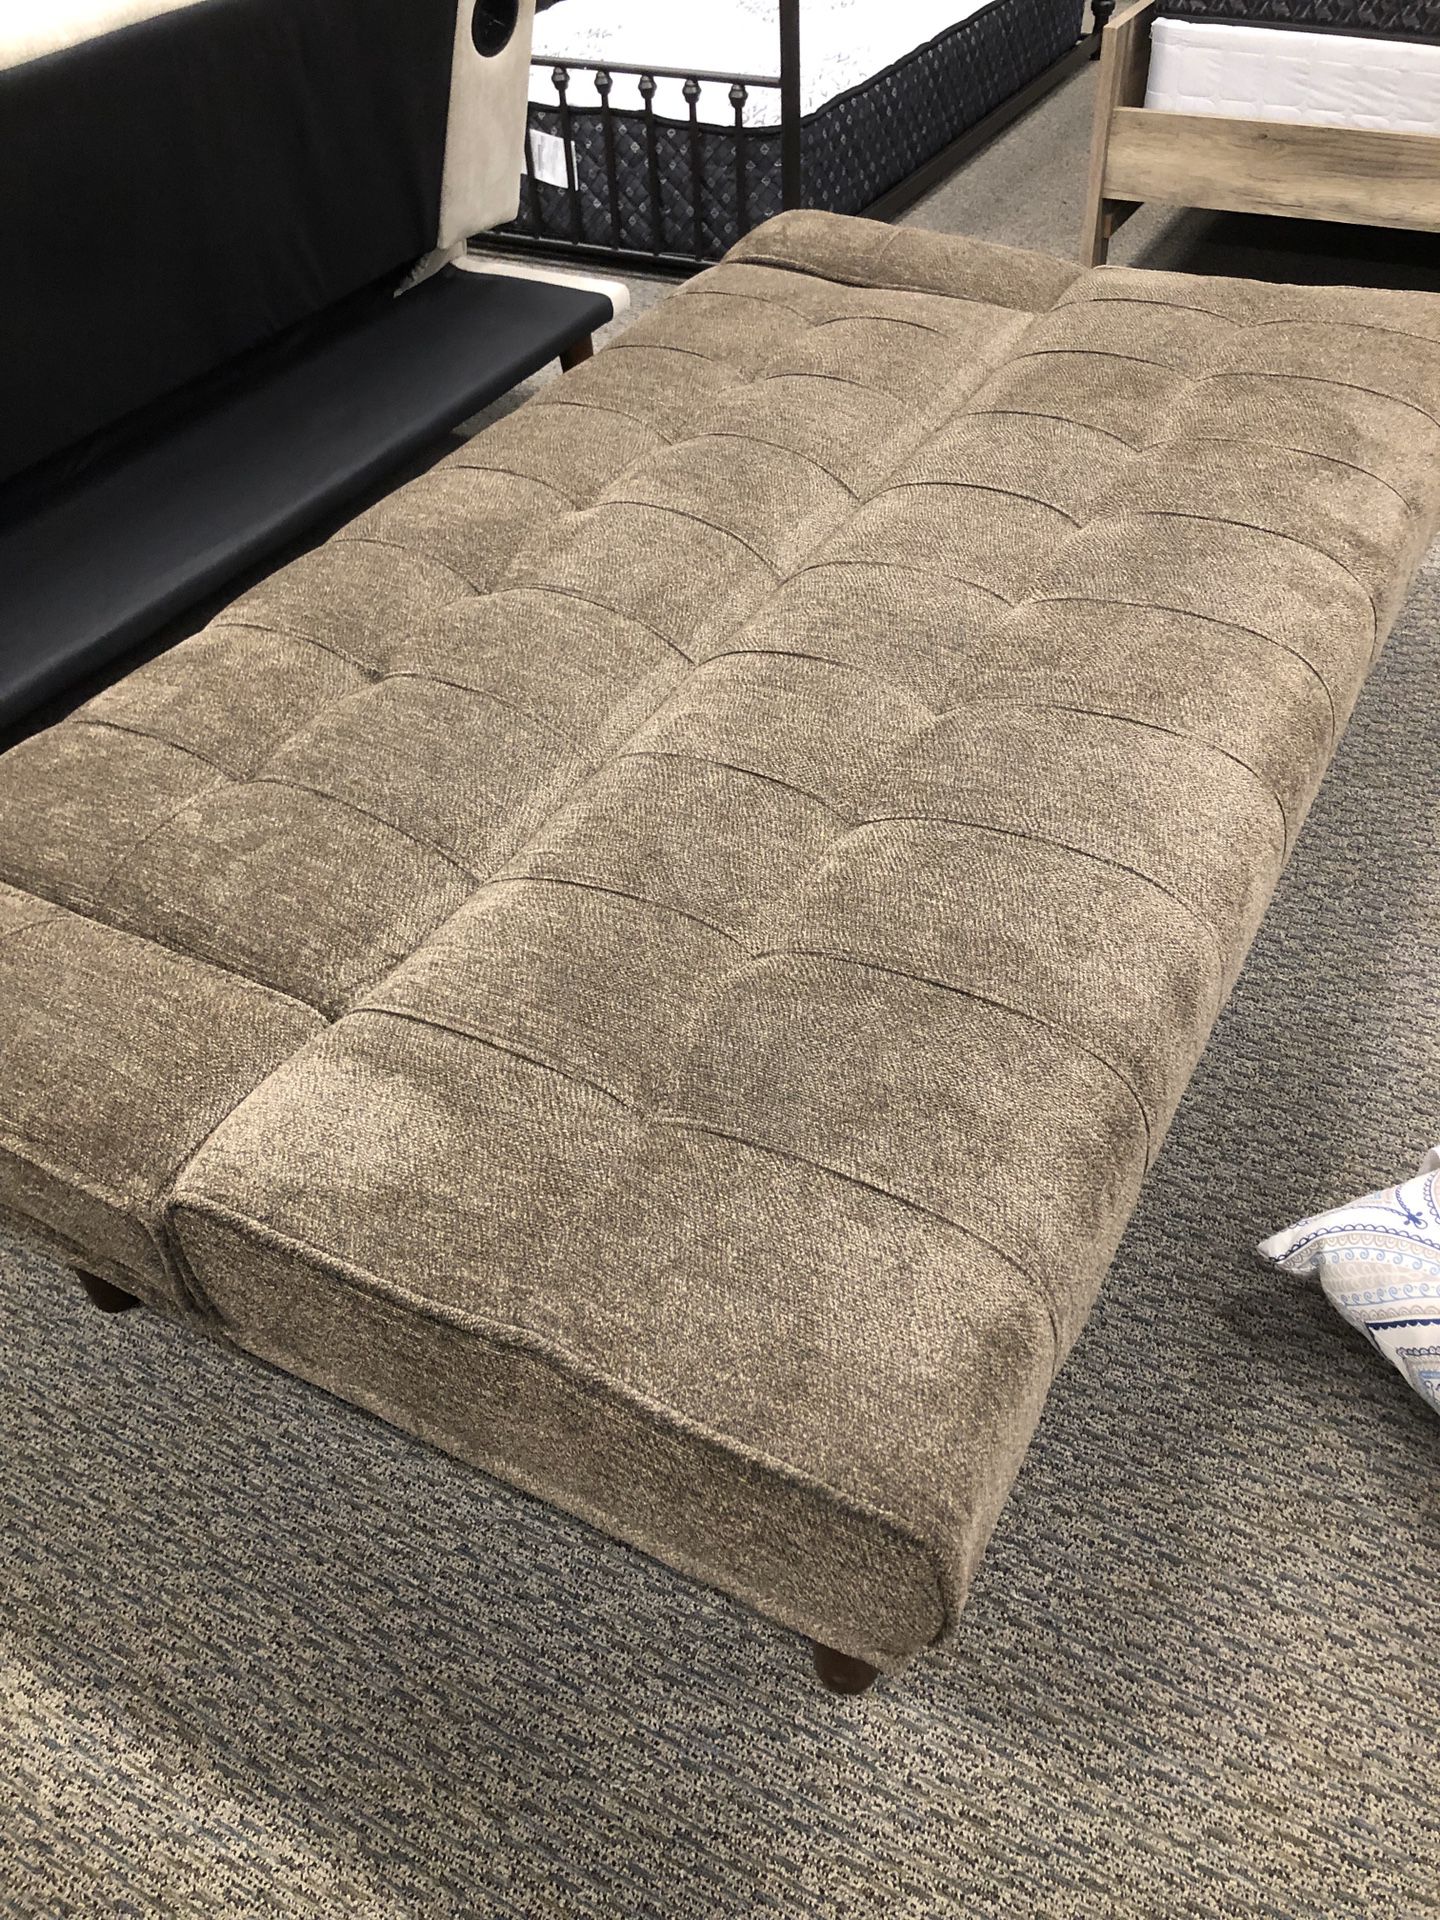 Sofa bed brown $270